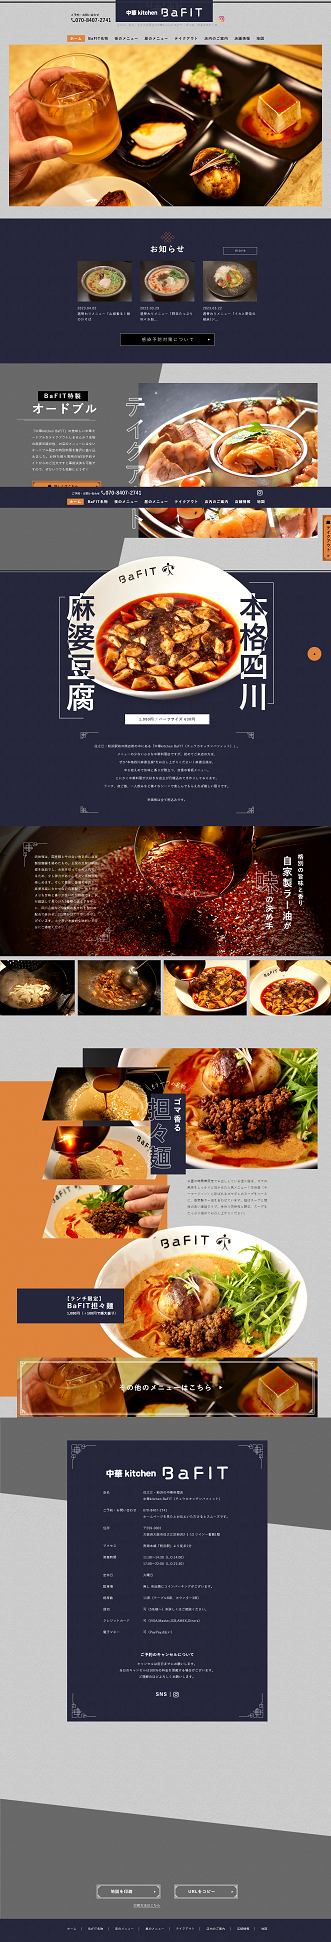 中華kitchen BaFIT（チュウカキッチンバフィット）